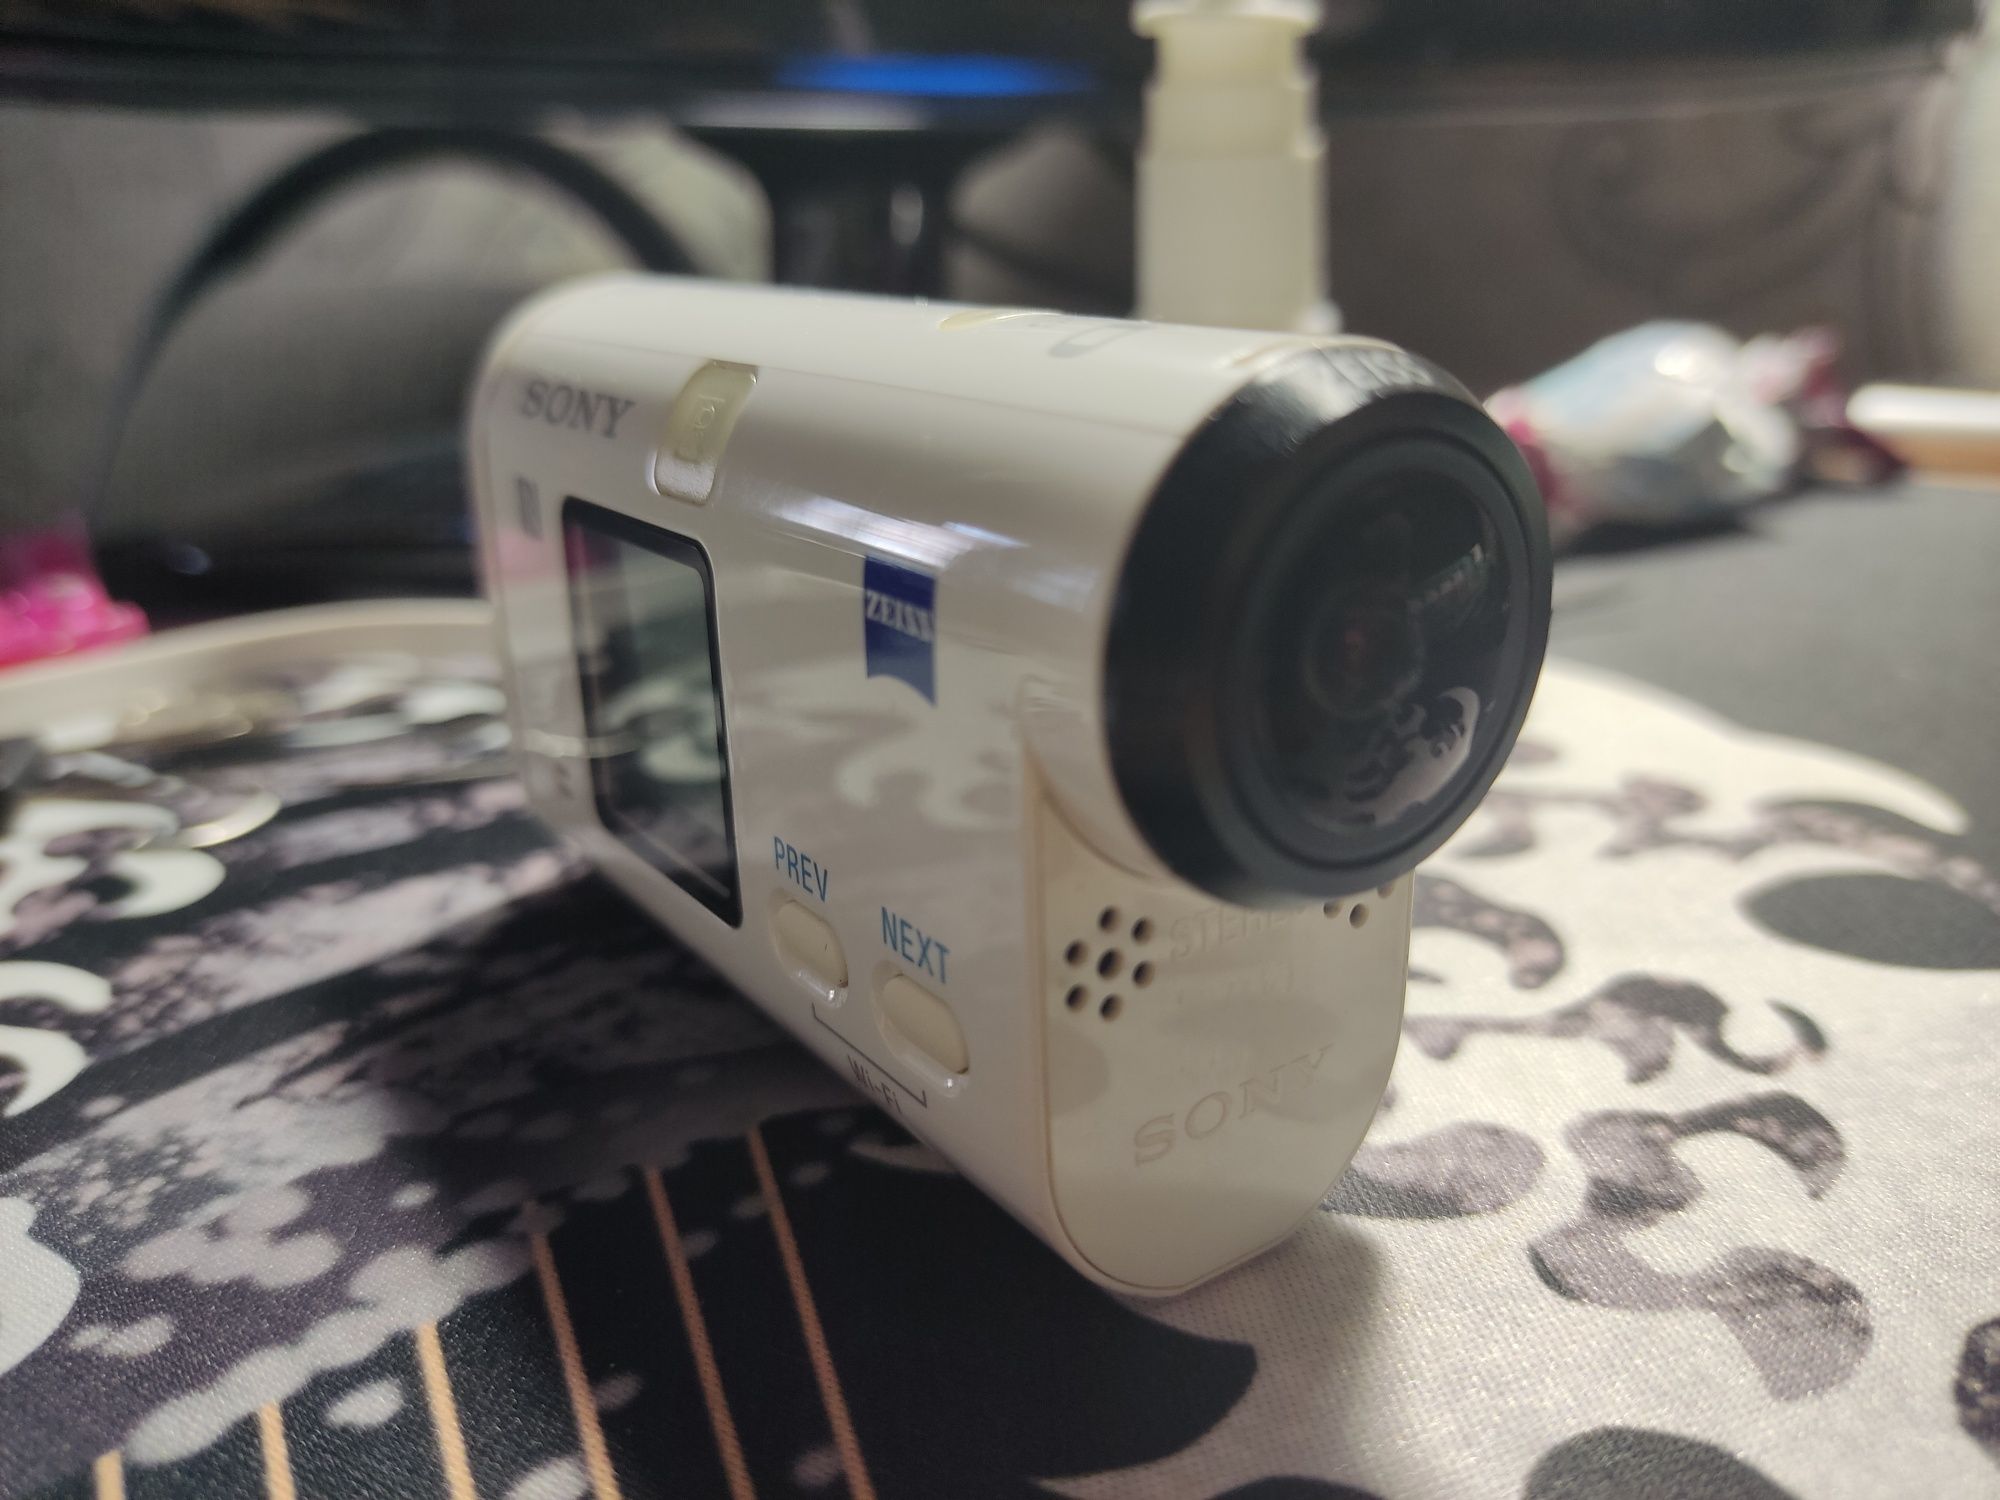 Экшен камера Sony HDR-AS200V